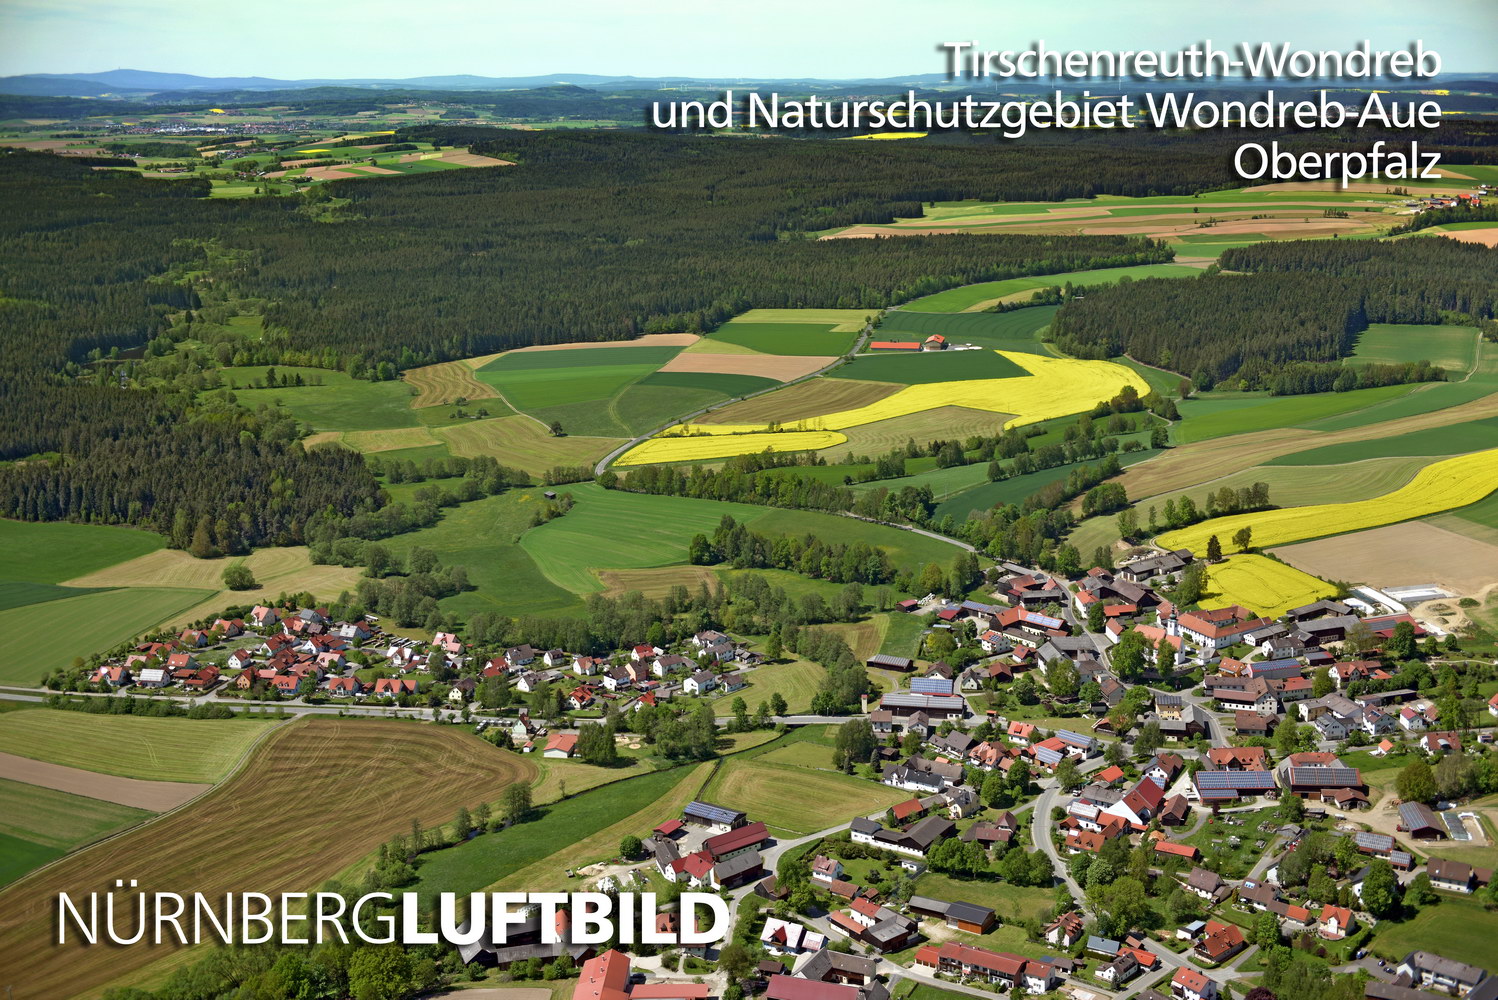 Tirschenreuth-Wondreb und Naturschutzgebiet Wondreb-Aue, Luftbild